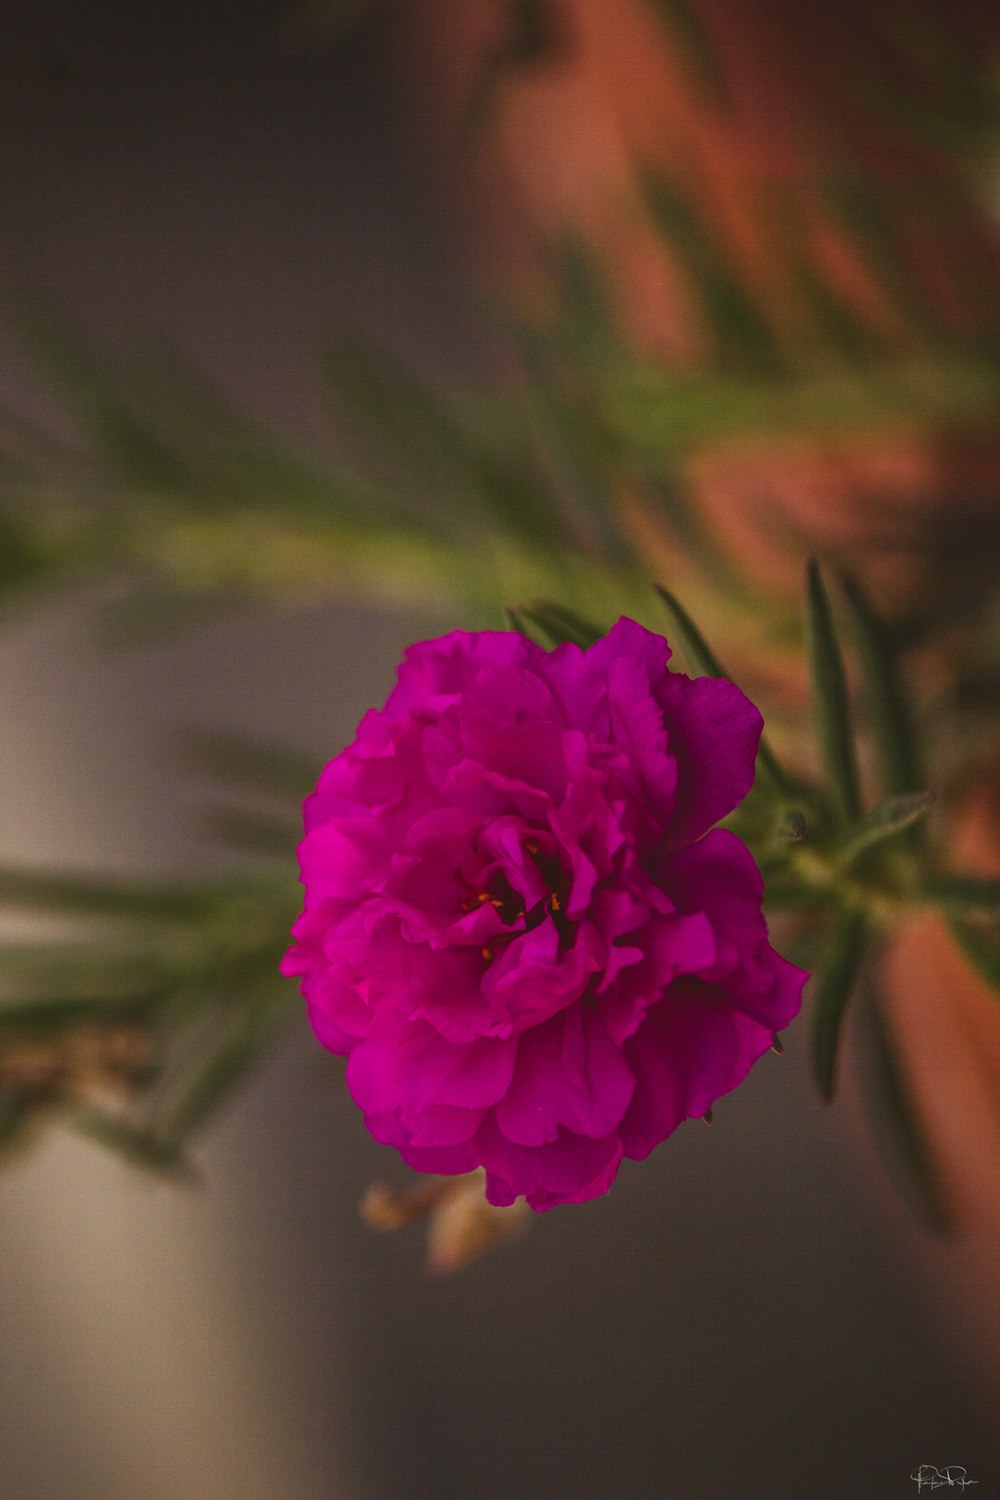 eine rosa Blume, die auf einer grünen Pflanze sitzt